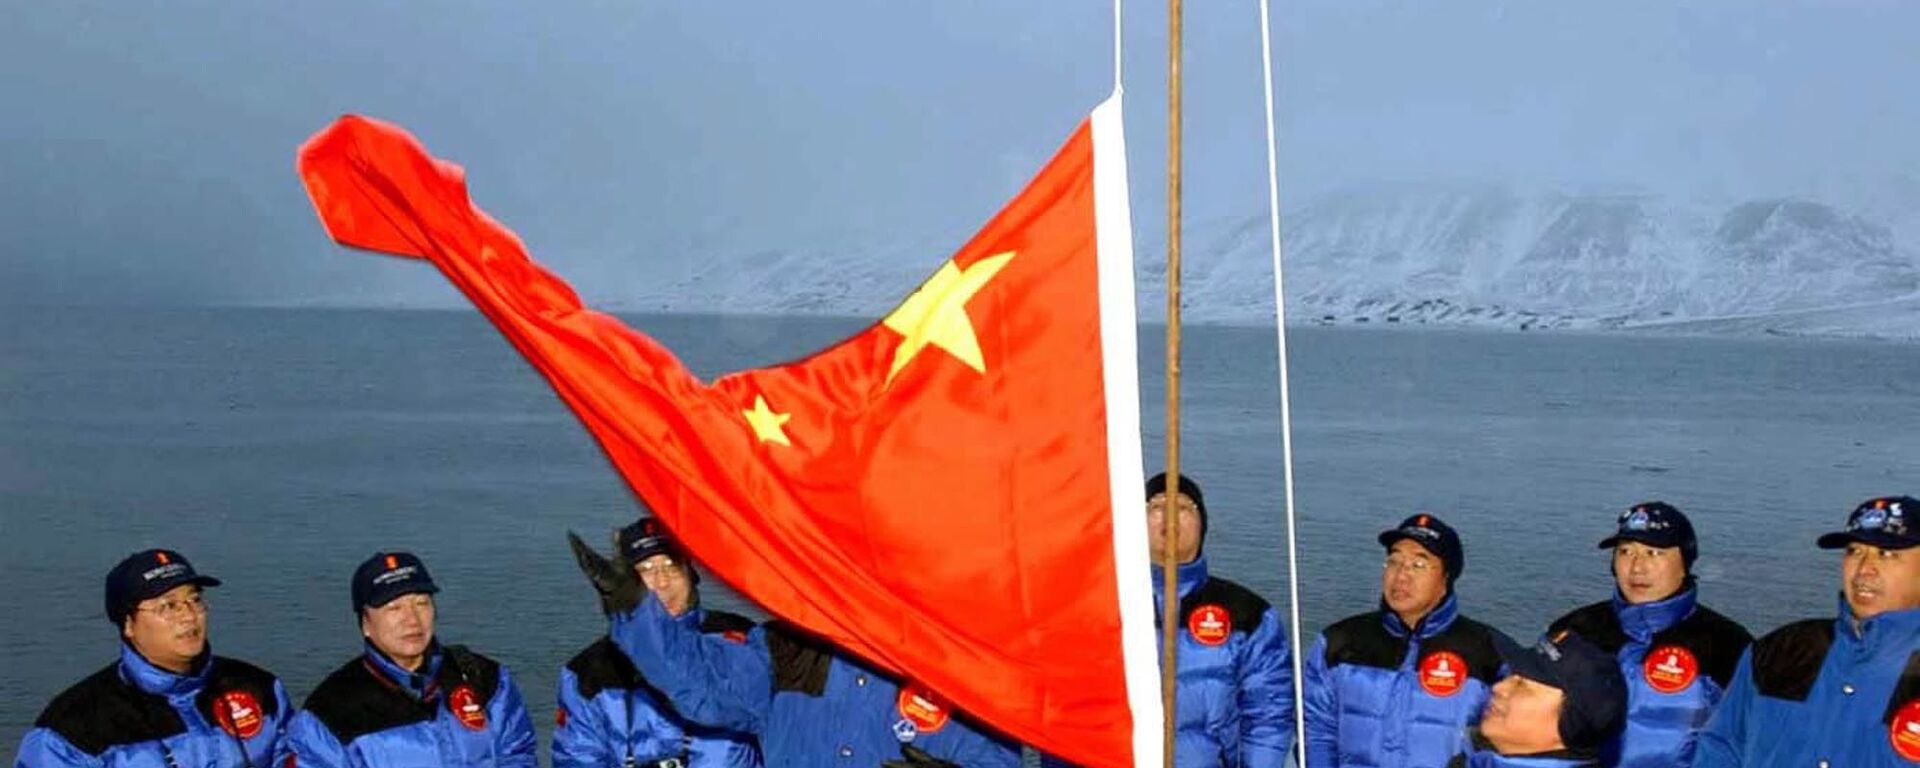 أعضاء بعثة صينية إلى القطب الشمالي يرفعون علم الصين في لونغييربين في جزيرة سبيتسبيرغن / سفالبارد، شمال النرويج، 31 أكتوبر 2001 - سبوتنيك عربي, 1920, 28.04.2022